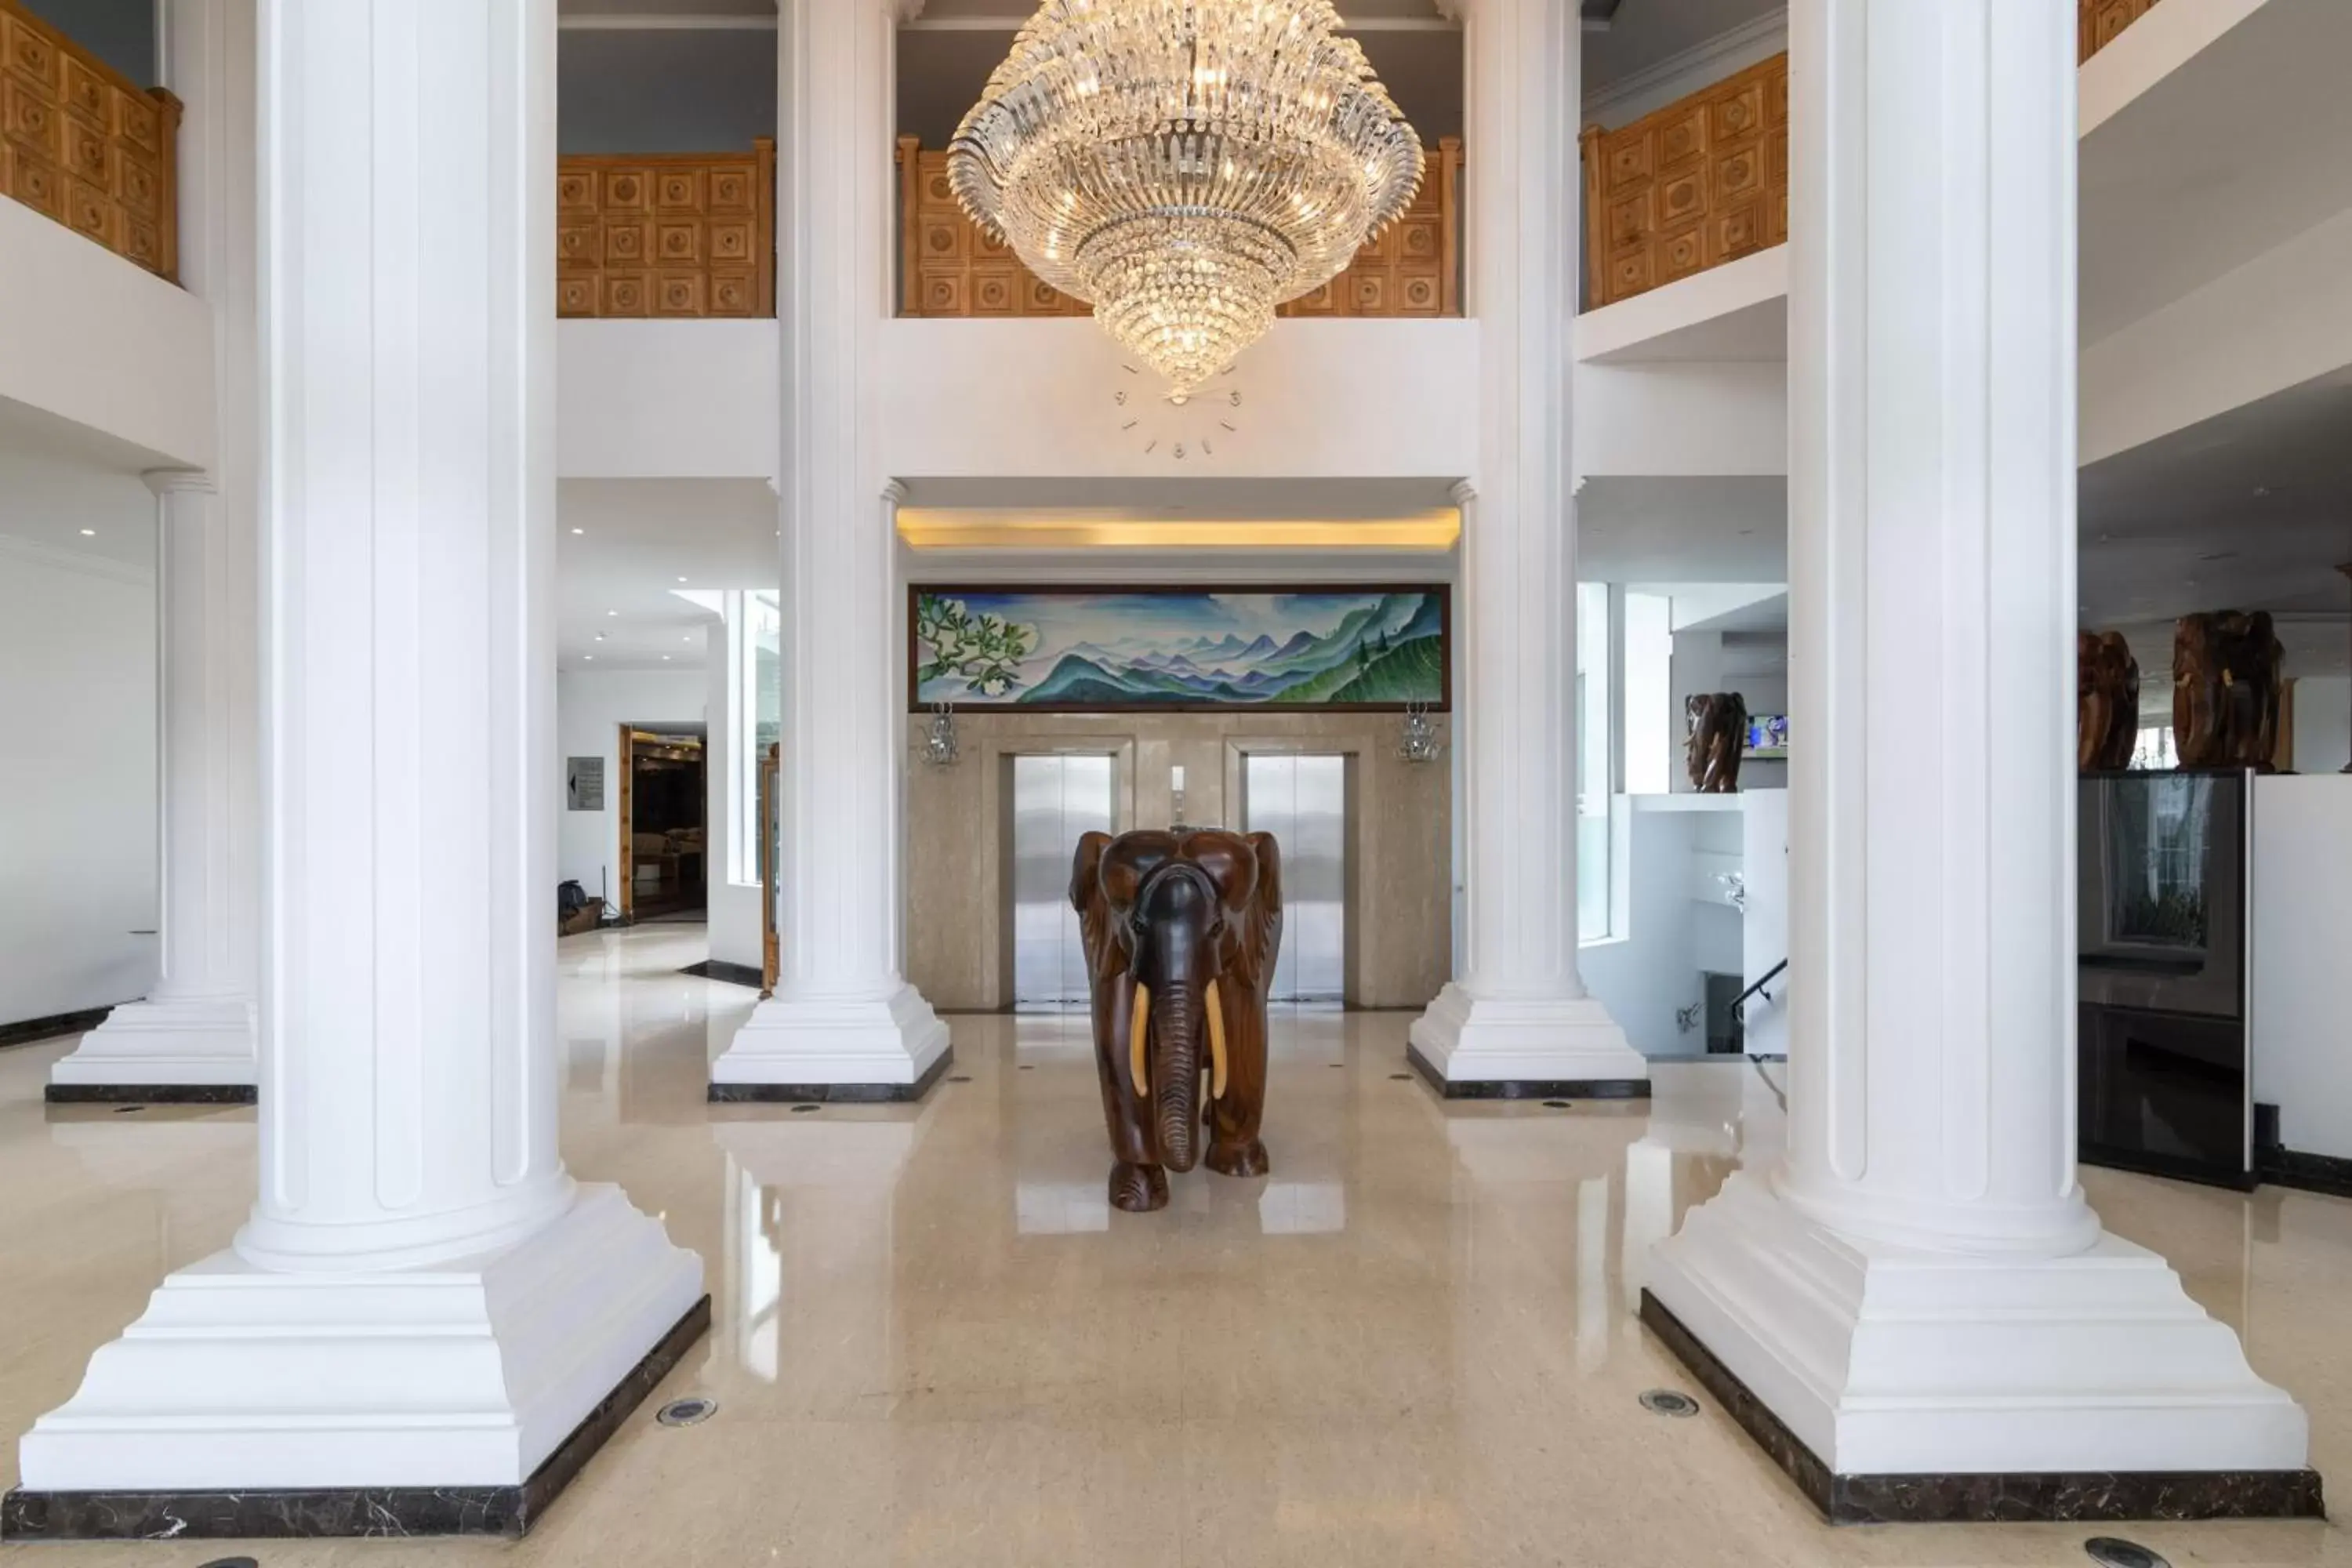 Lobby or reception in Araliya Green Hills Hotel